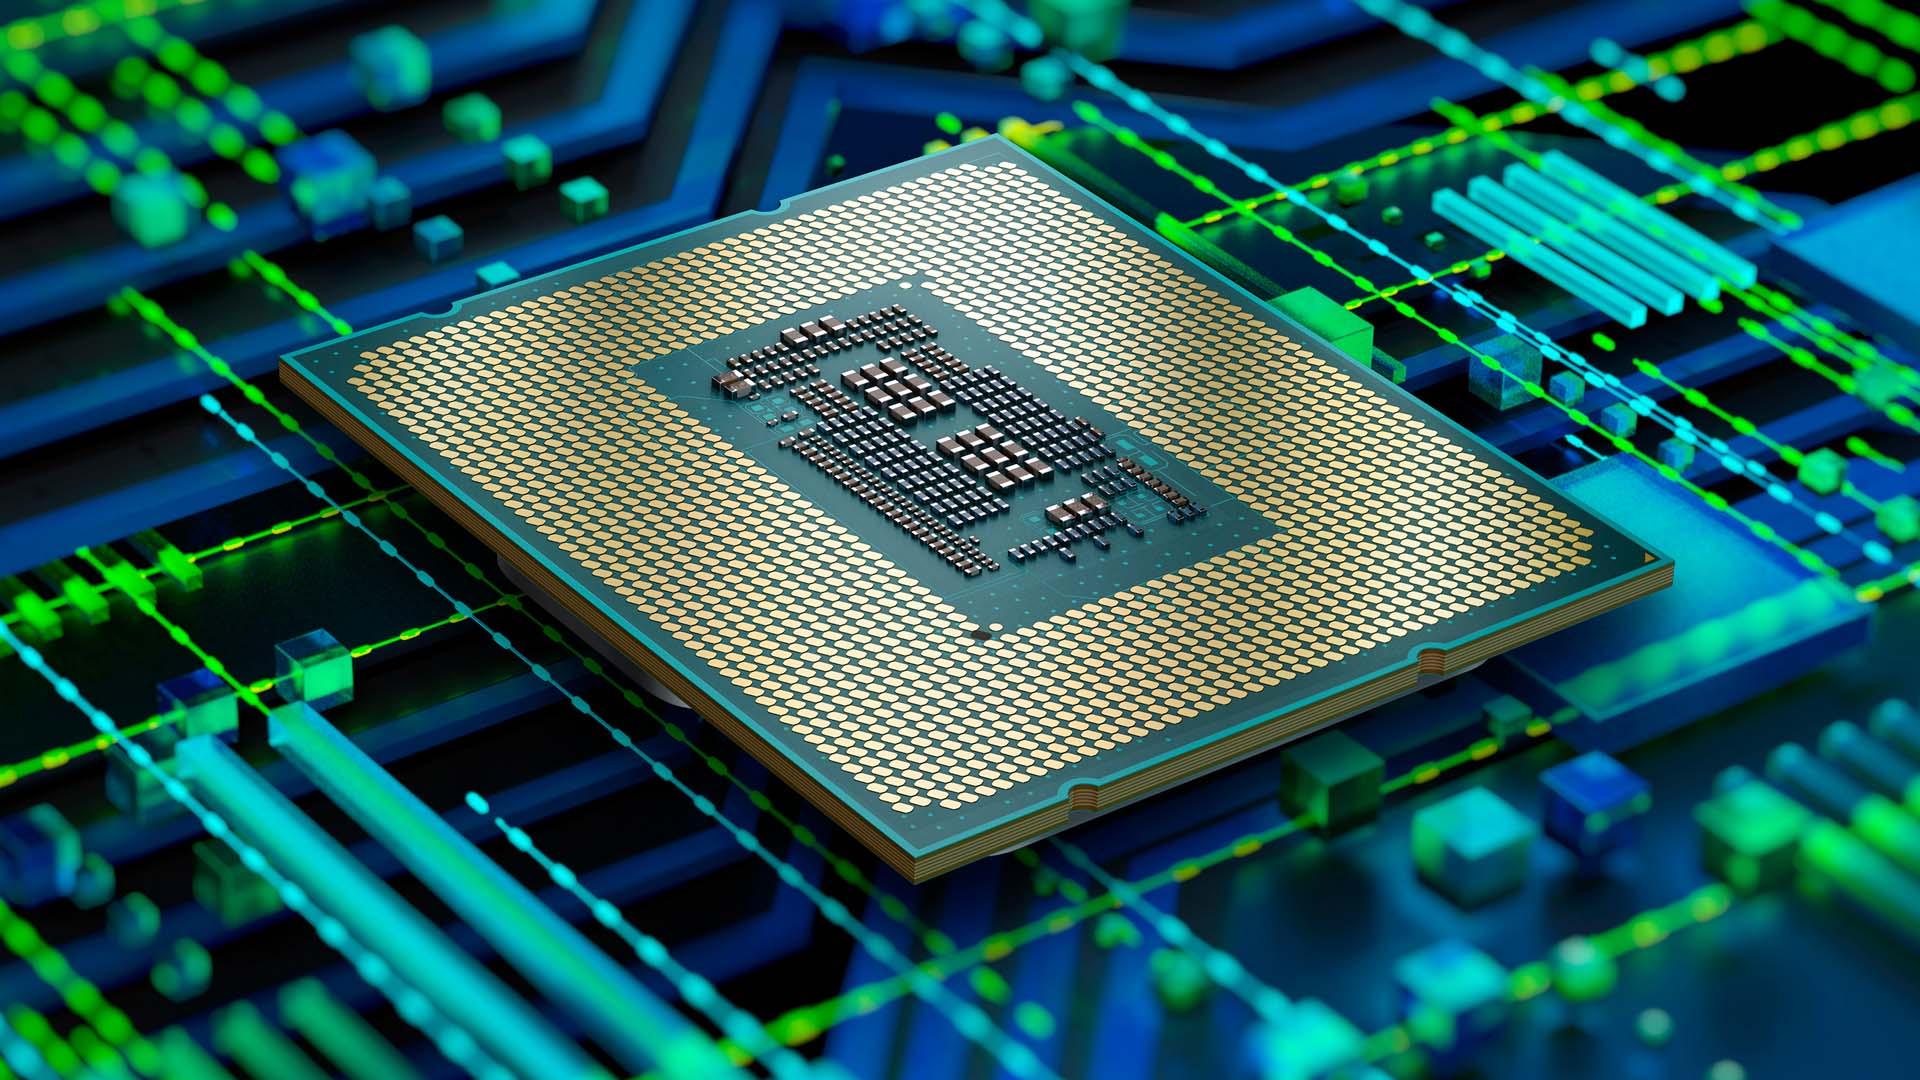 Intel annonce discrètement la mort de l'architecture 32 bits, les vieux  jeux et logiciels vont disparaître